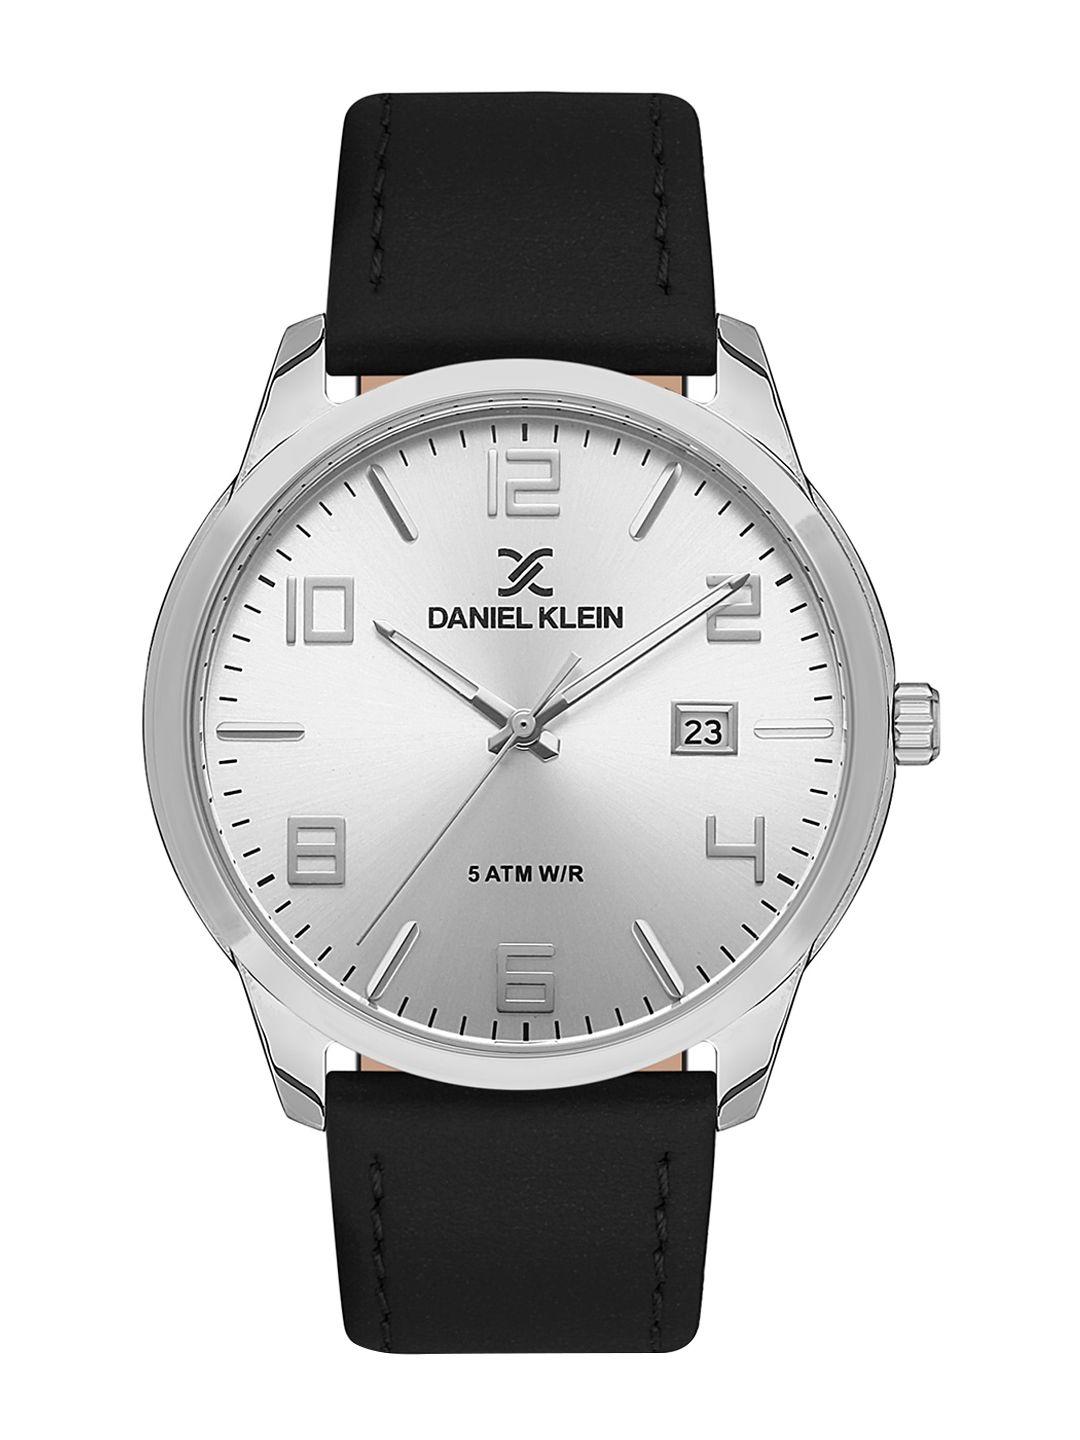 daniel klein men dial & leather straps analogue watch dk 1 13448-1